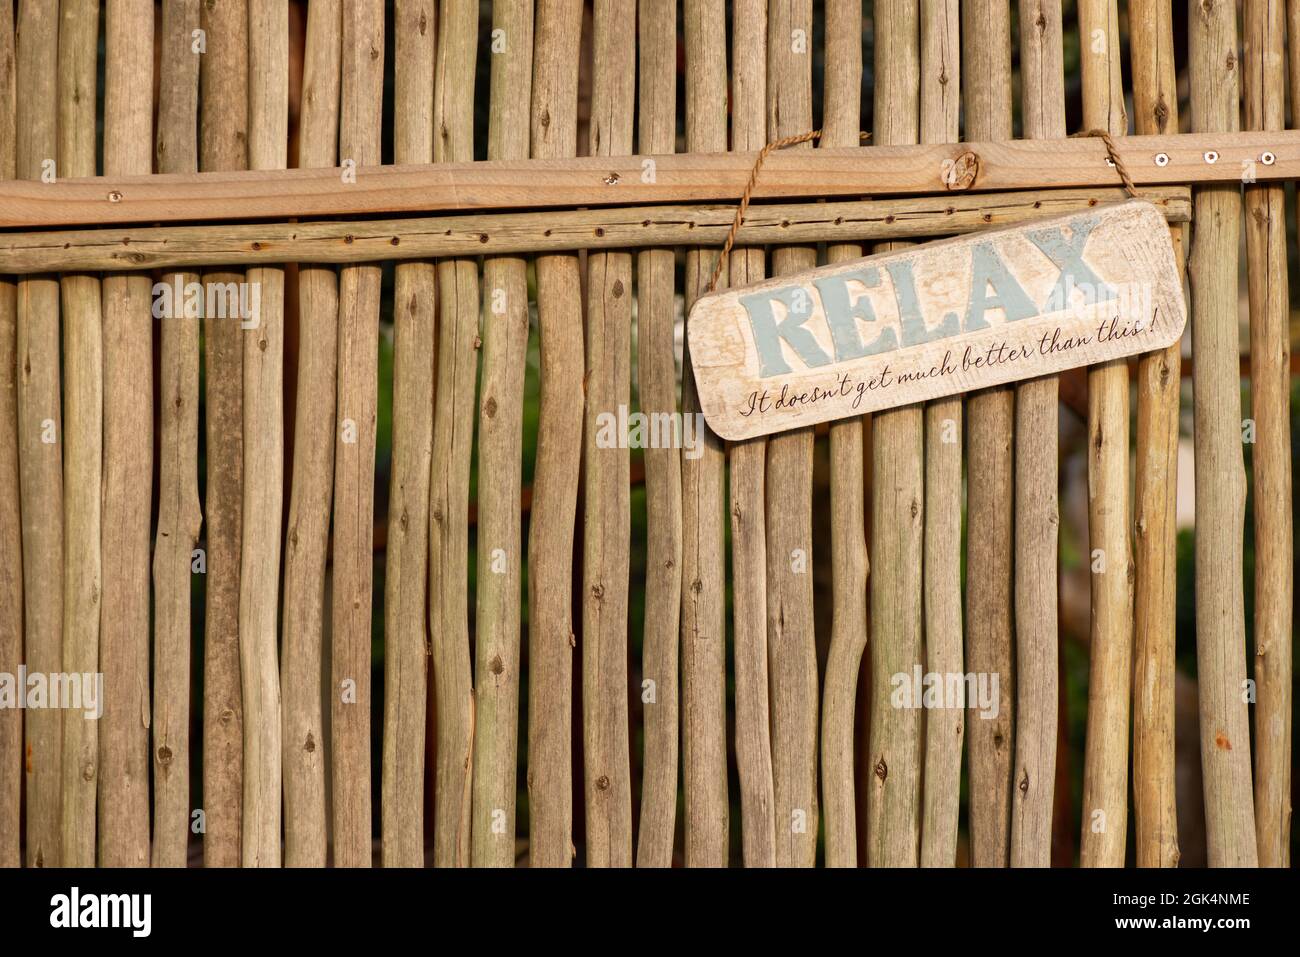 clôture en bois avec panneau relax Banque D'Images